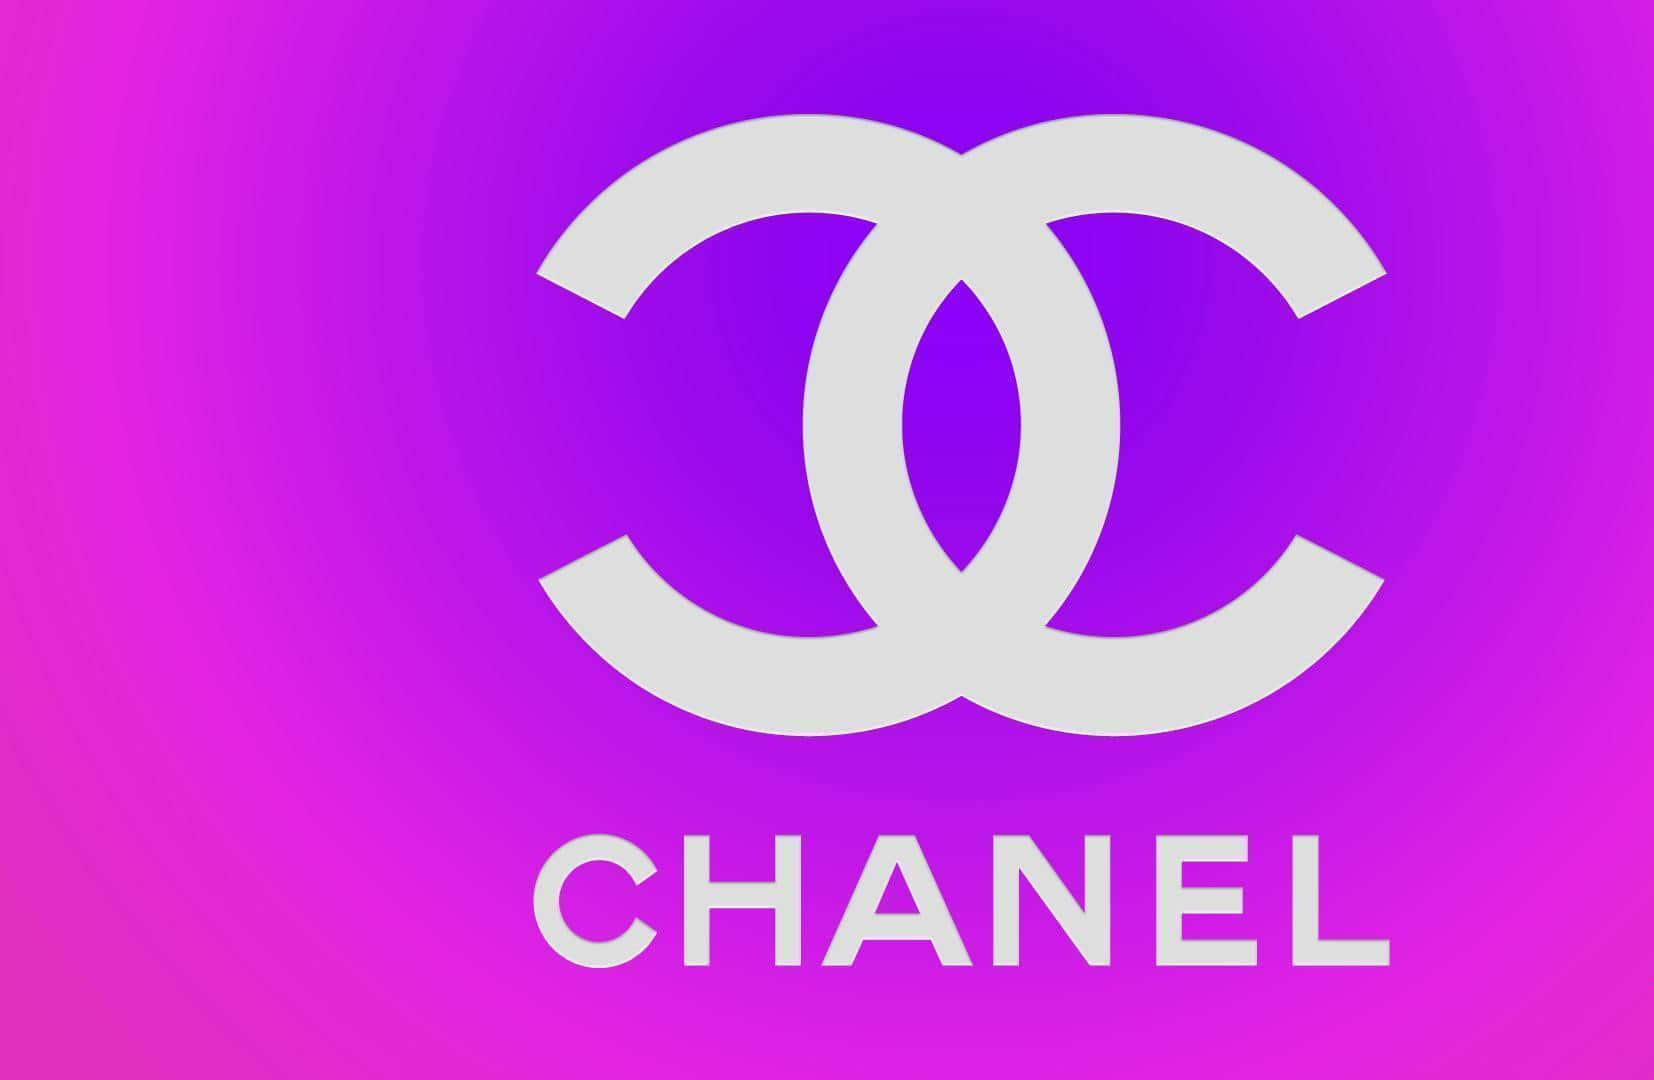 Ikonodas Berühmte Chanel-logo In Eleganter Schwarz-weißen Farbgebung.